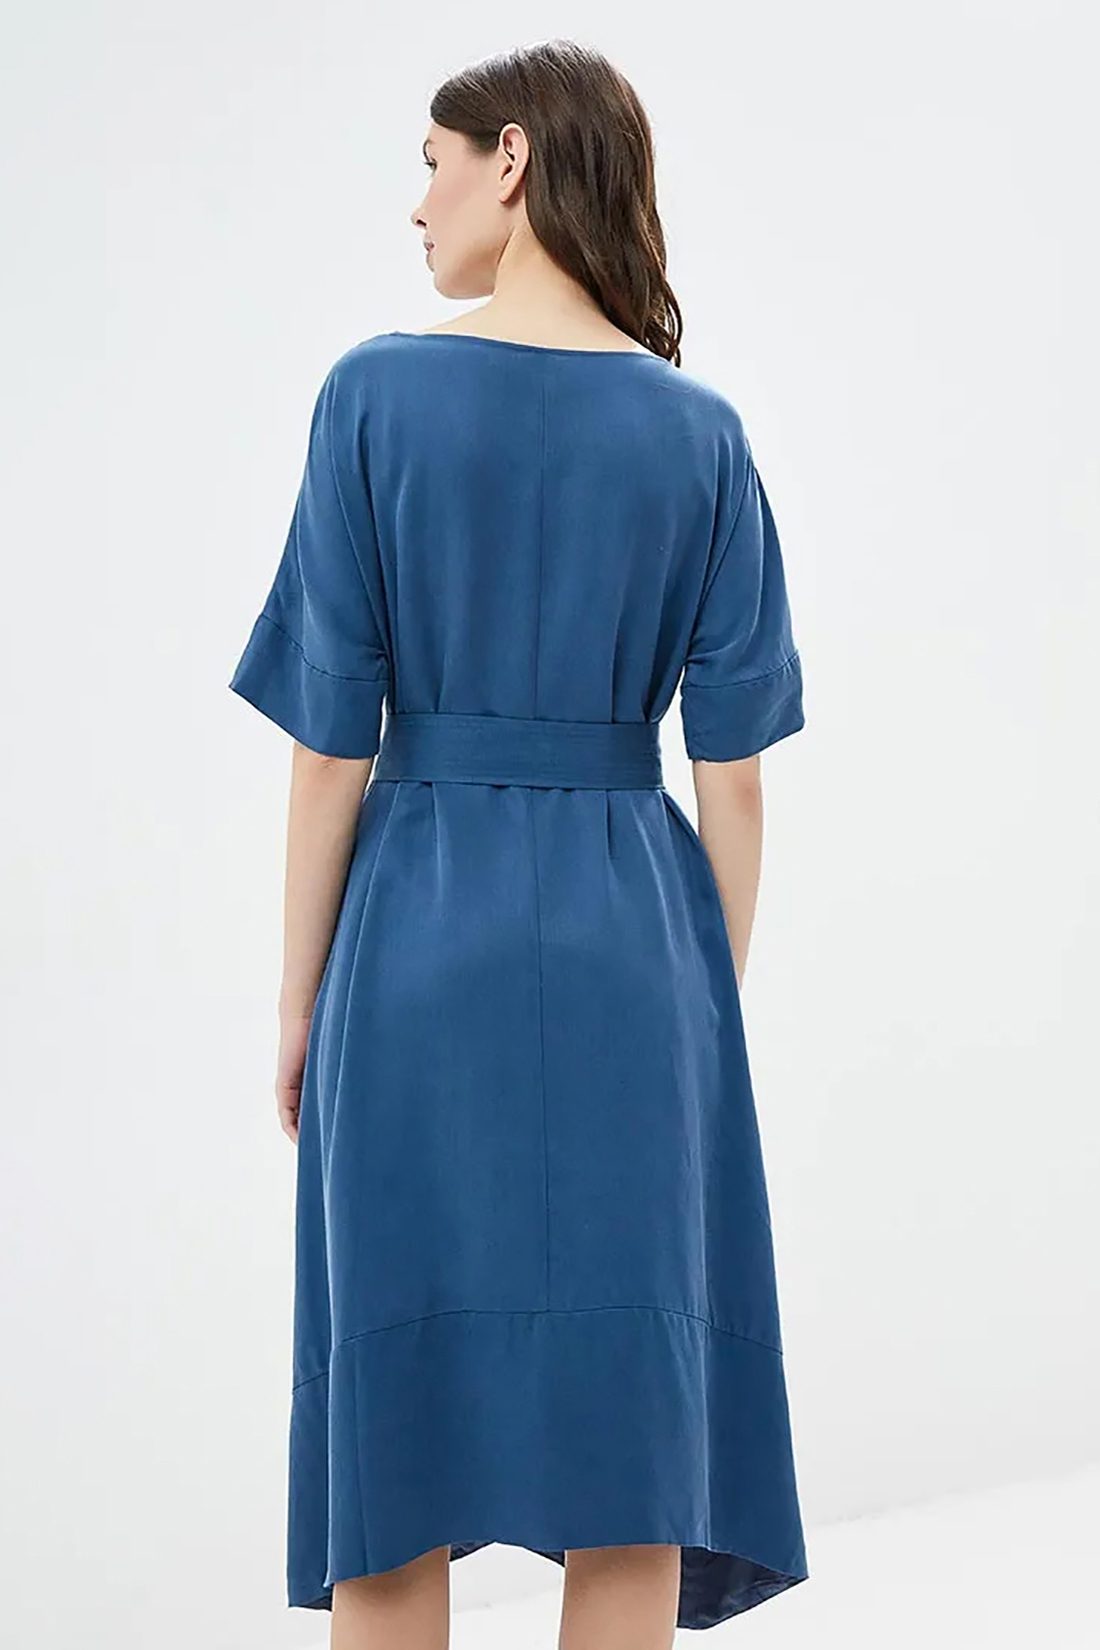 Платье с модным поясом (арт. baon B459060), размер XL, цвет синий Платье с модным поясом (арт. baon B459060) - фото 2